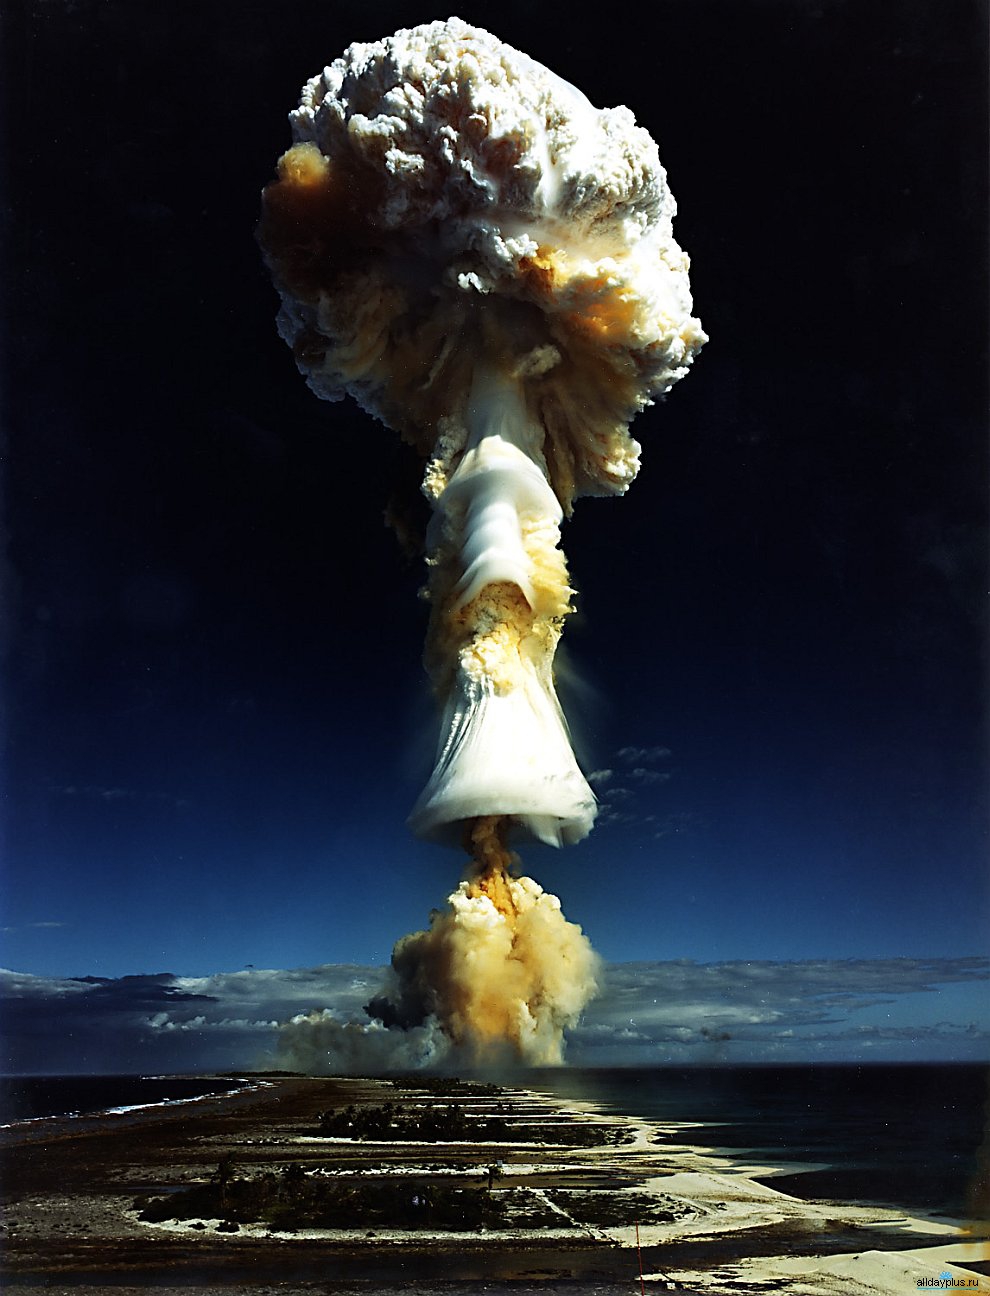 Ядерное оружие, испытания